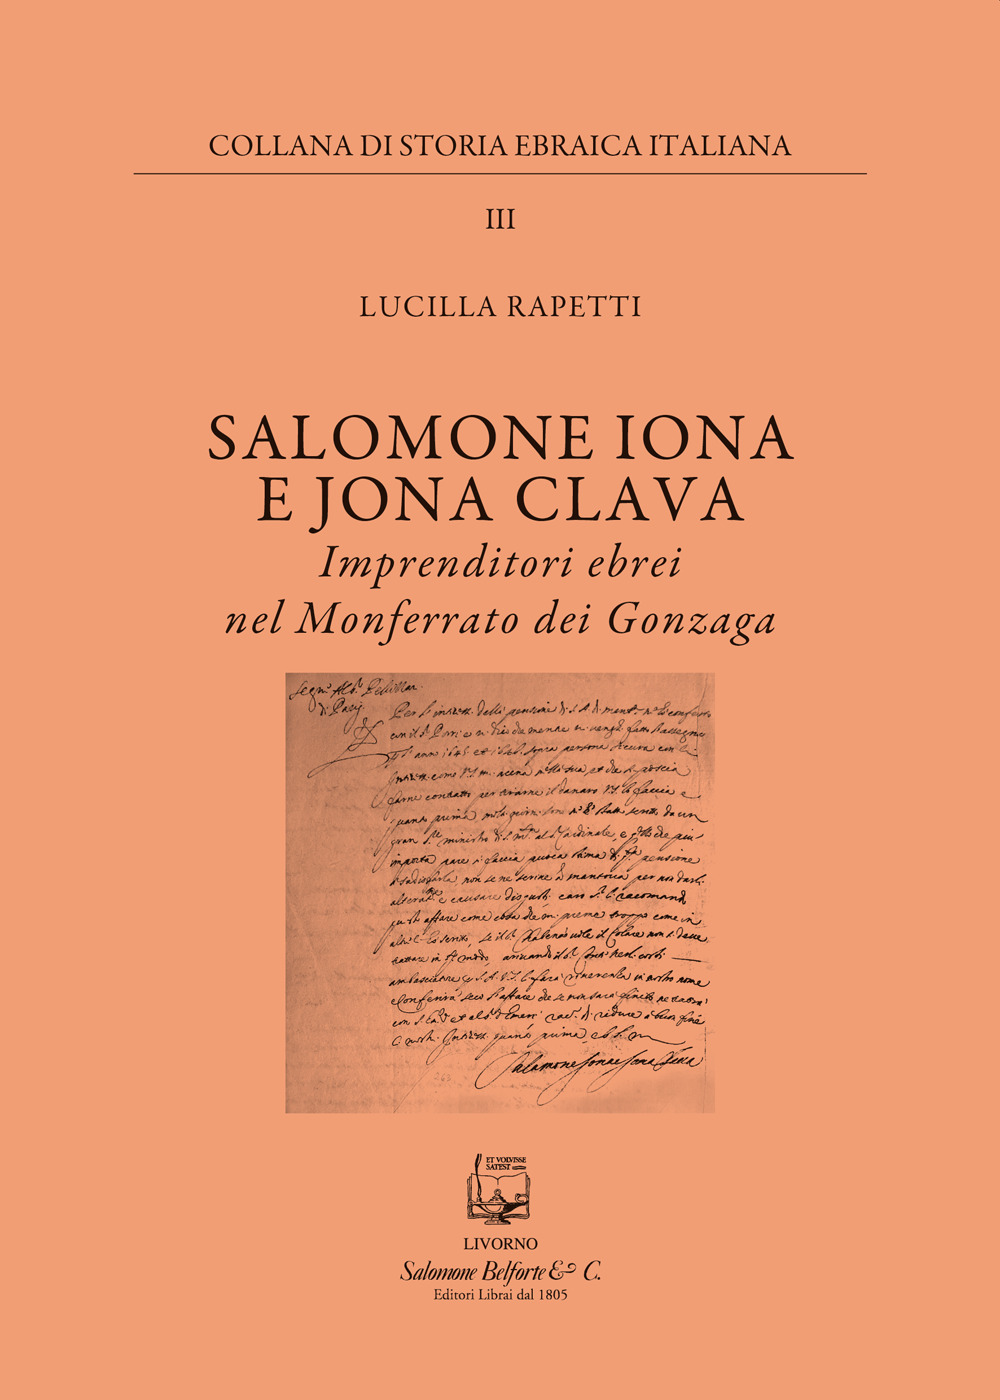 Salomone Iona E Jona Cclava. Imprenditori ebrei nel Monferrato dei Gonzaga